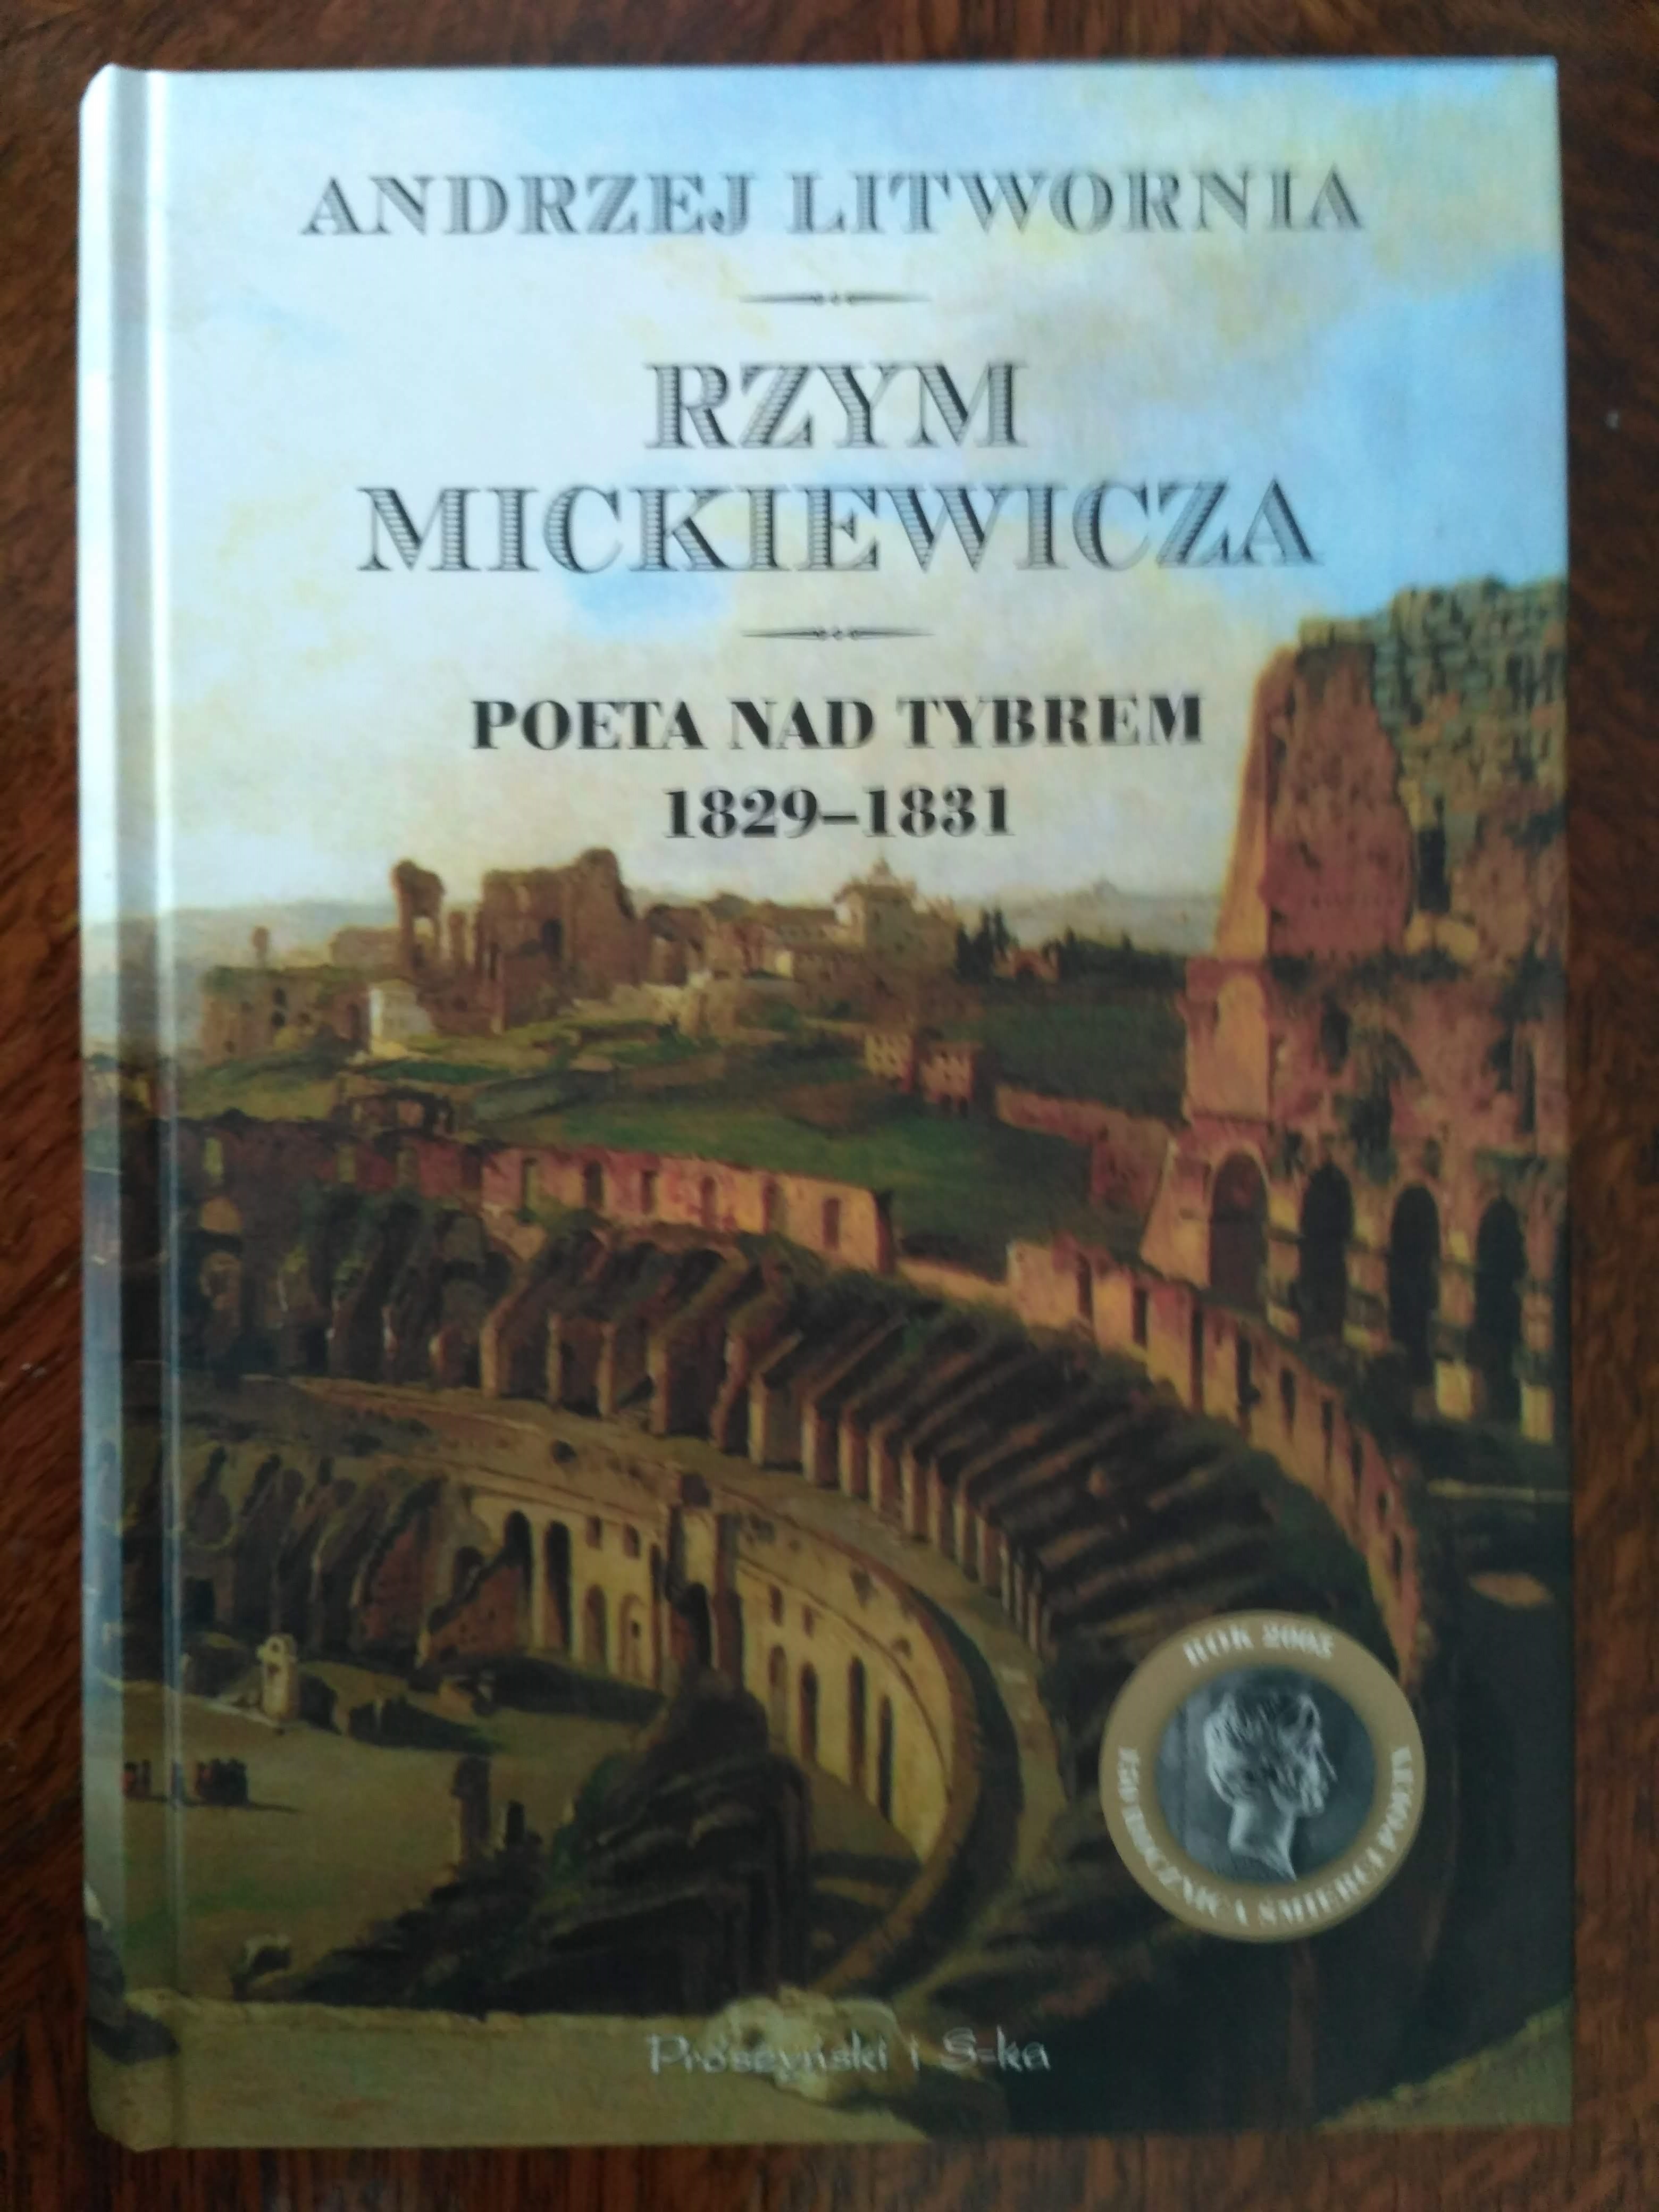 Rzym Mickiewicza. Poeta nad Tybrem 1829-1831, A. Litwornia